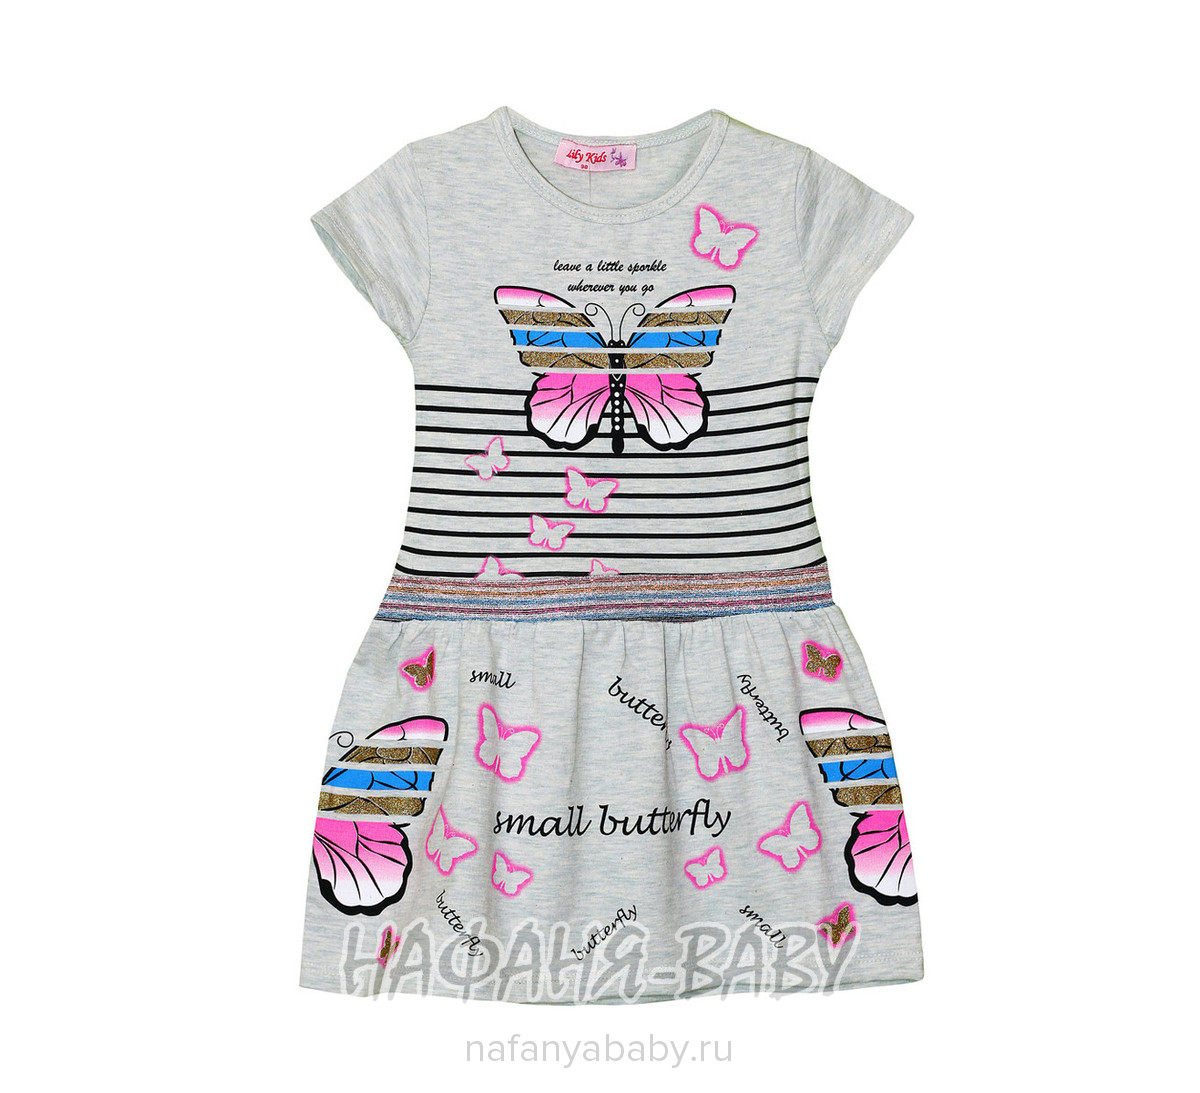 Детское платье LILY KIDS арт: 3076, 5-9 лет, 1-4 года, цвет розовый меланж, оптом Турция